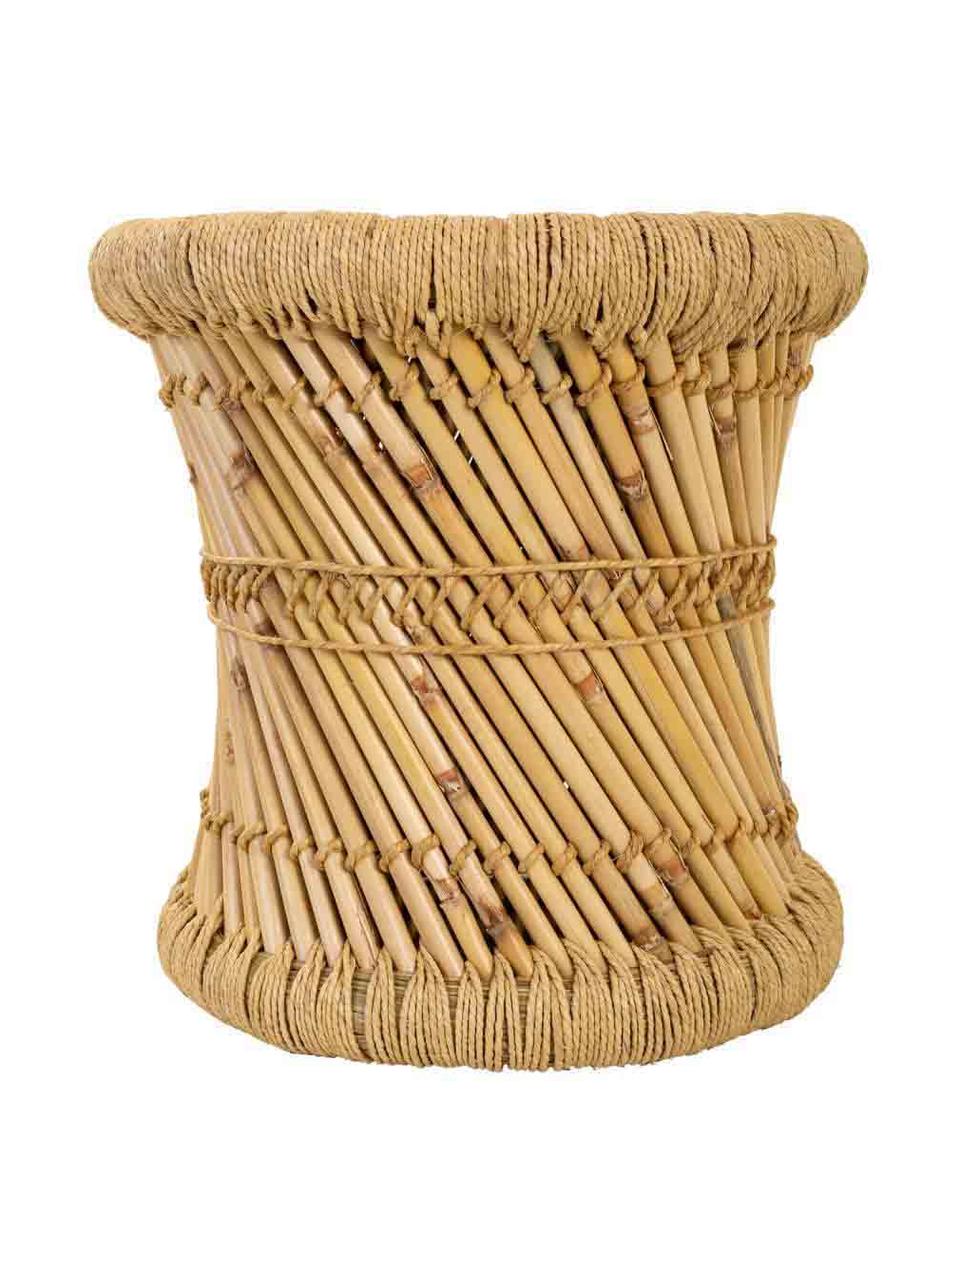 Komplet zewnętrznych stolików pomocniczych z drewna bambusowego Ariadna, 2 elem., Drewno bambusowe, lina, Drewno bambusowe, Komplet z różnymi rozmiarami